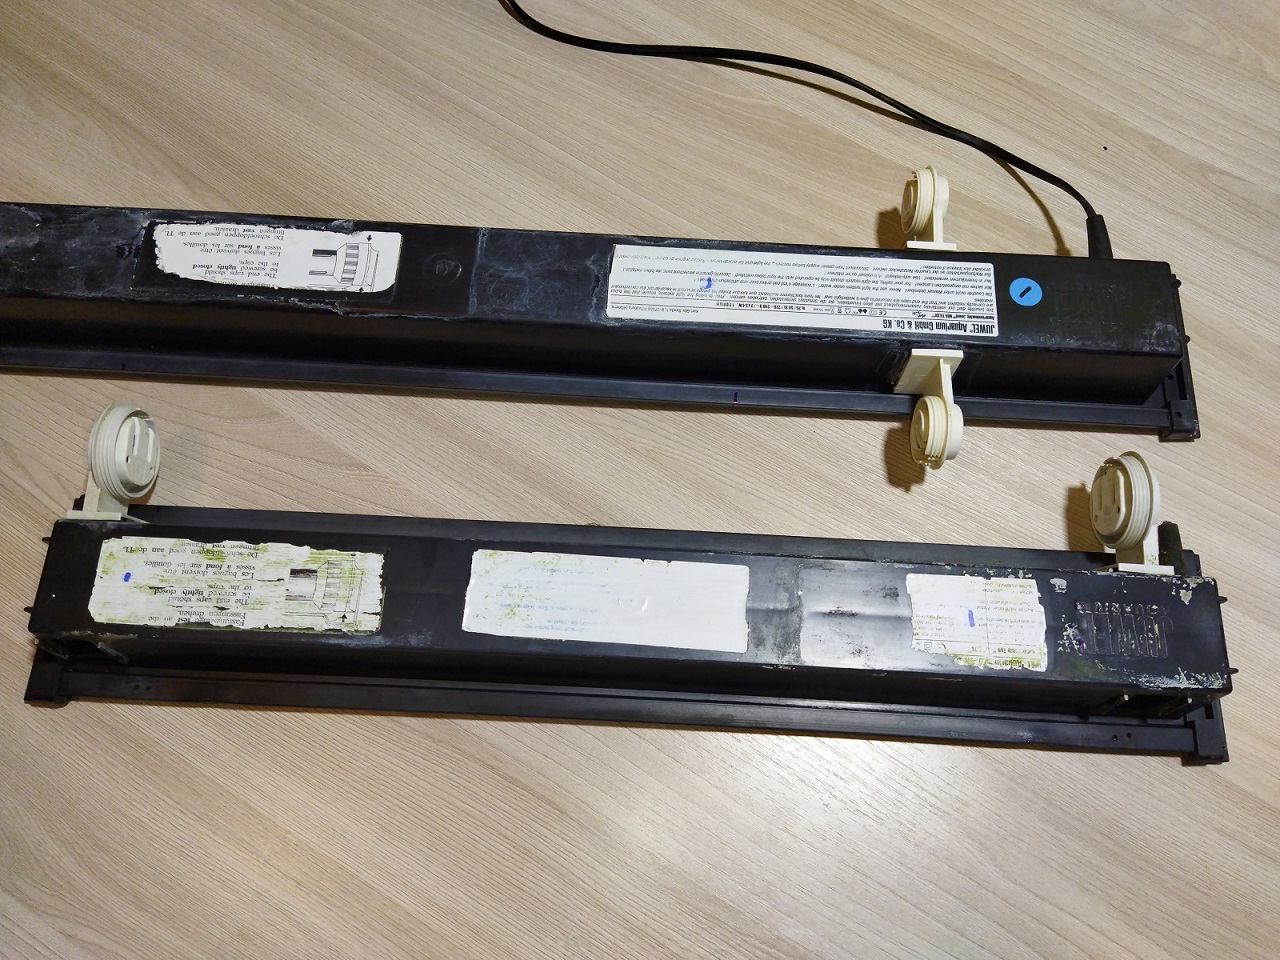 Аквариумные светильники Juwel Vision 450 и Lido 120 до ремонта вид снизу